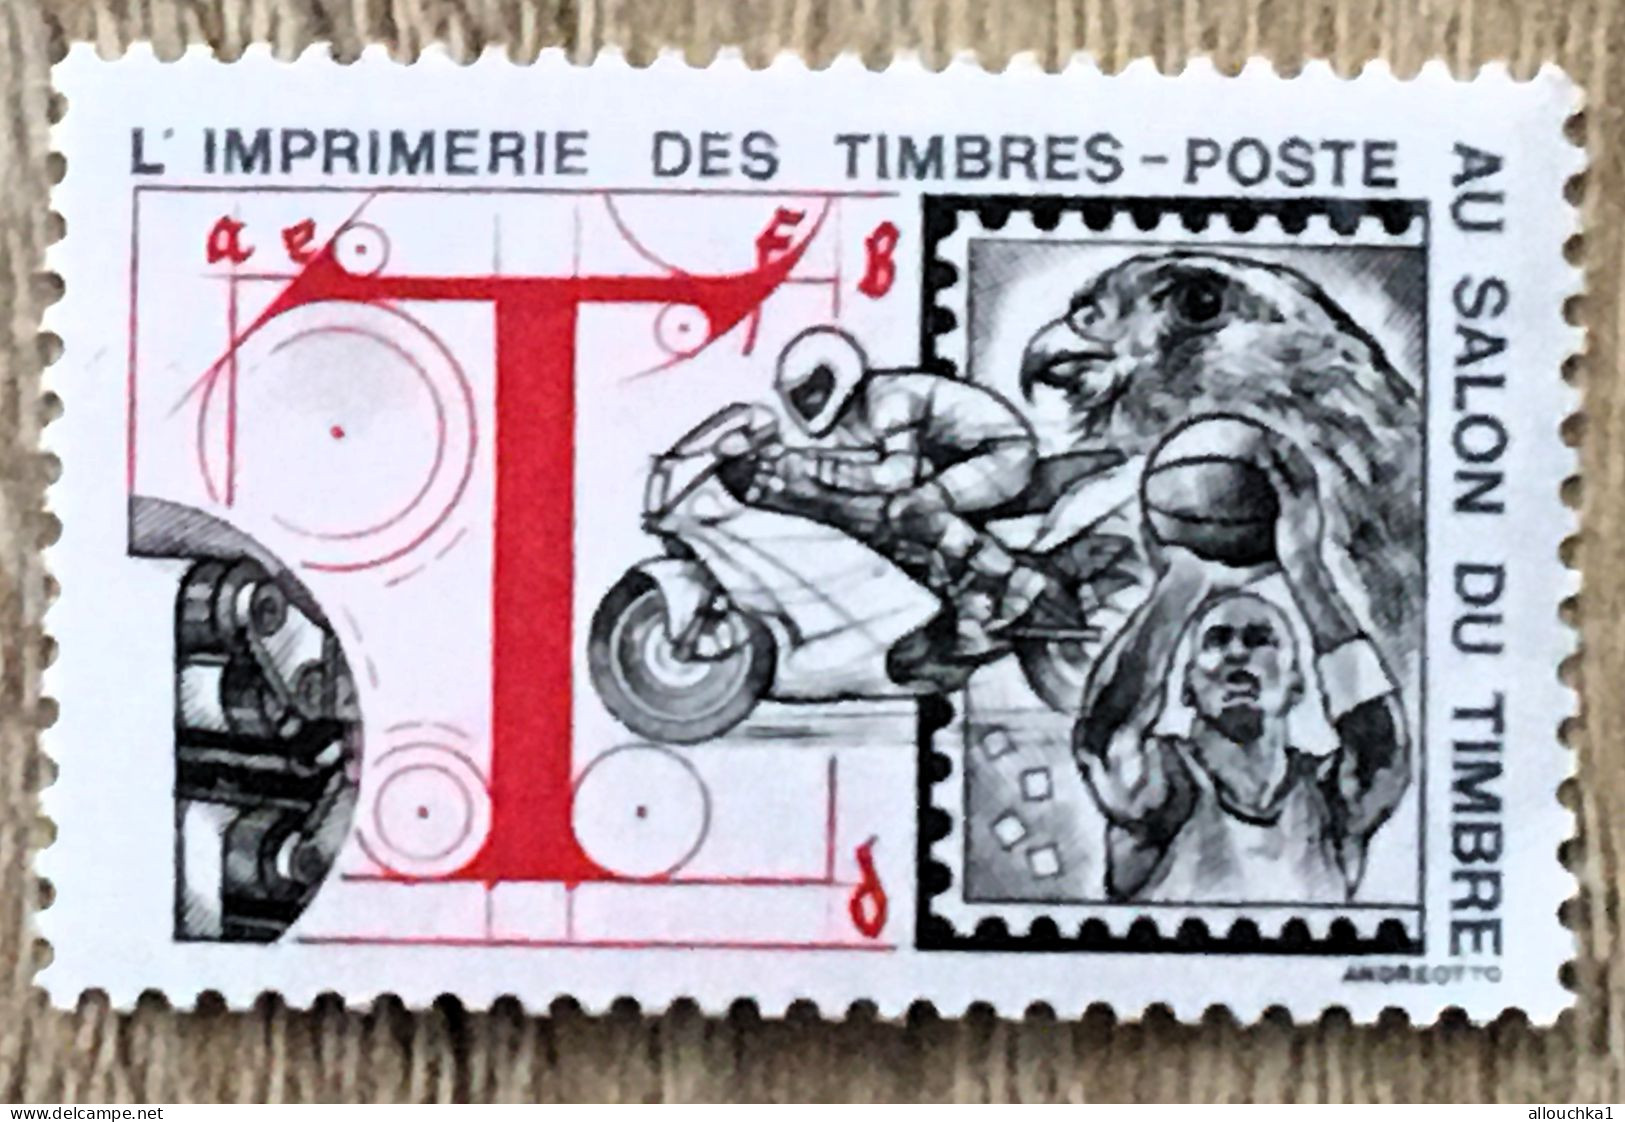 Imprimerie Timbres Poste Au Salon Du Timbre-2 Timbres Vignette**Expo-Philatélique-Erinnophilie-[E]Stamp-Sticker-Viñeta - Esposizioni Filateliche